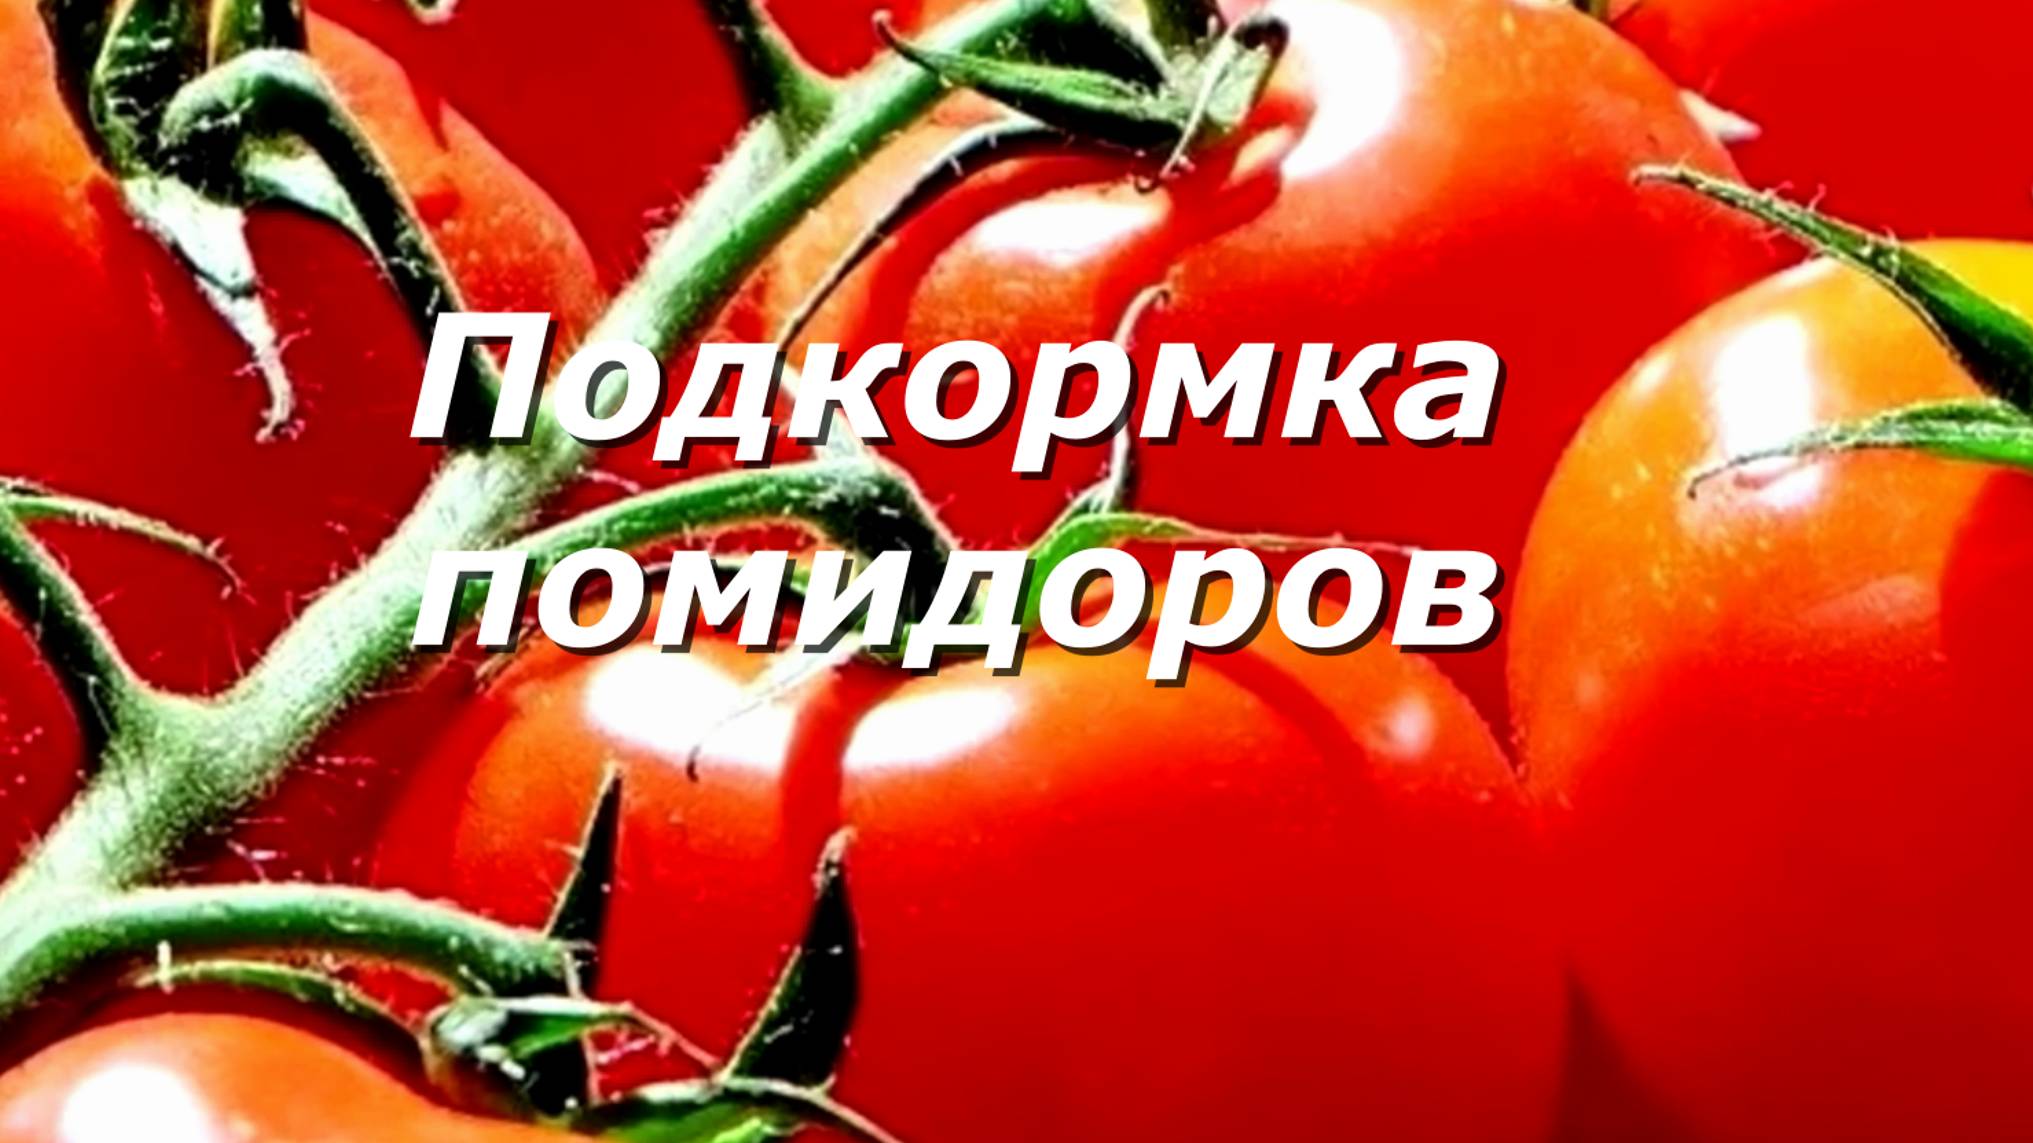 7 Хитростей, чтобы удвоить урожай томатов